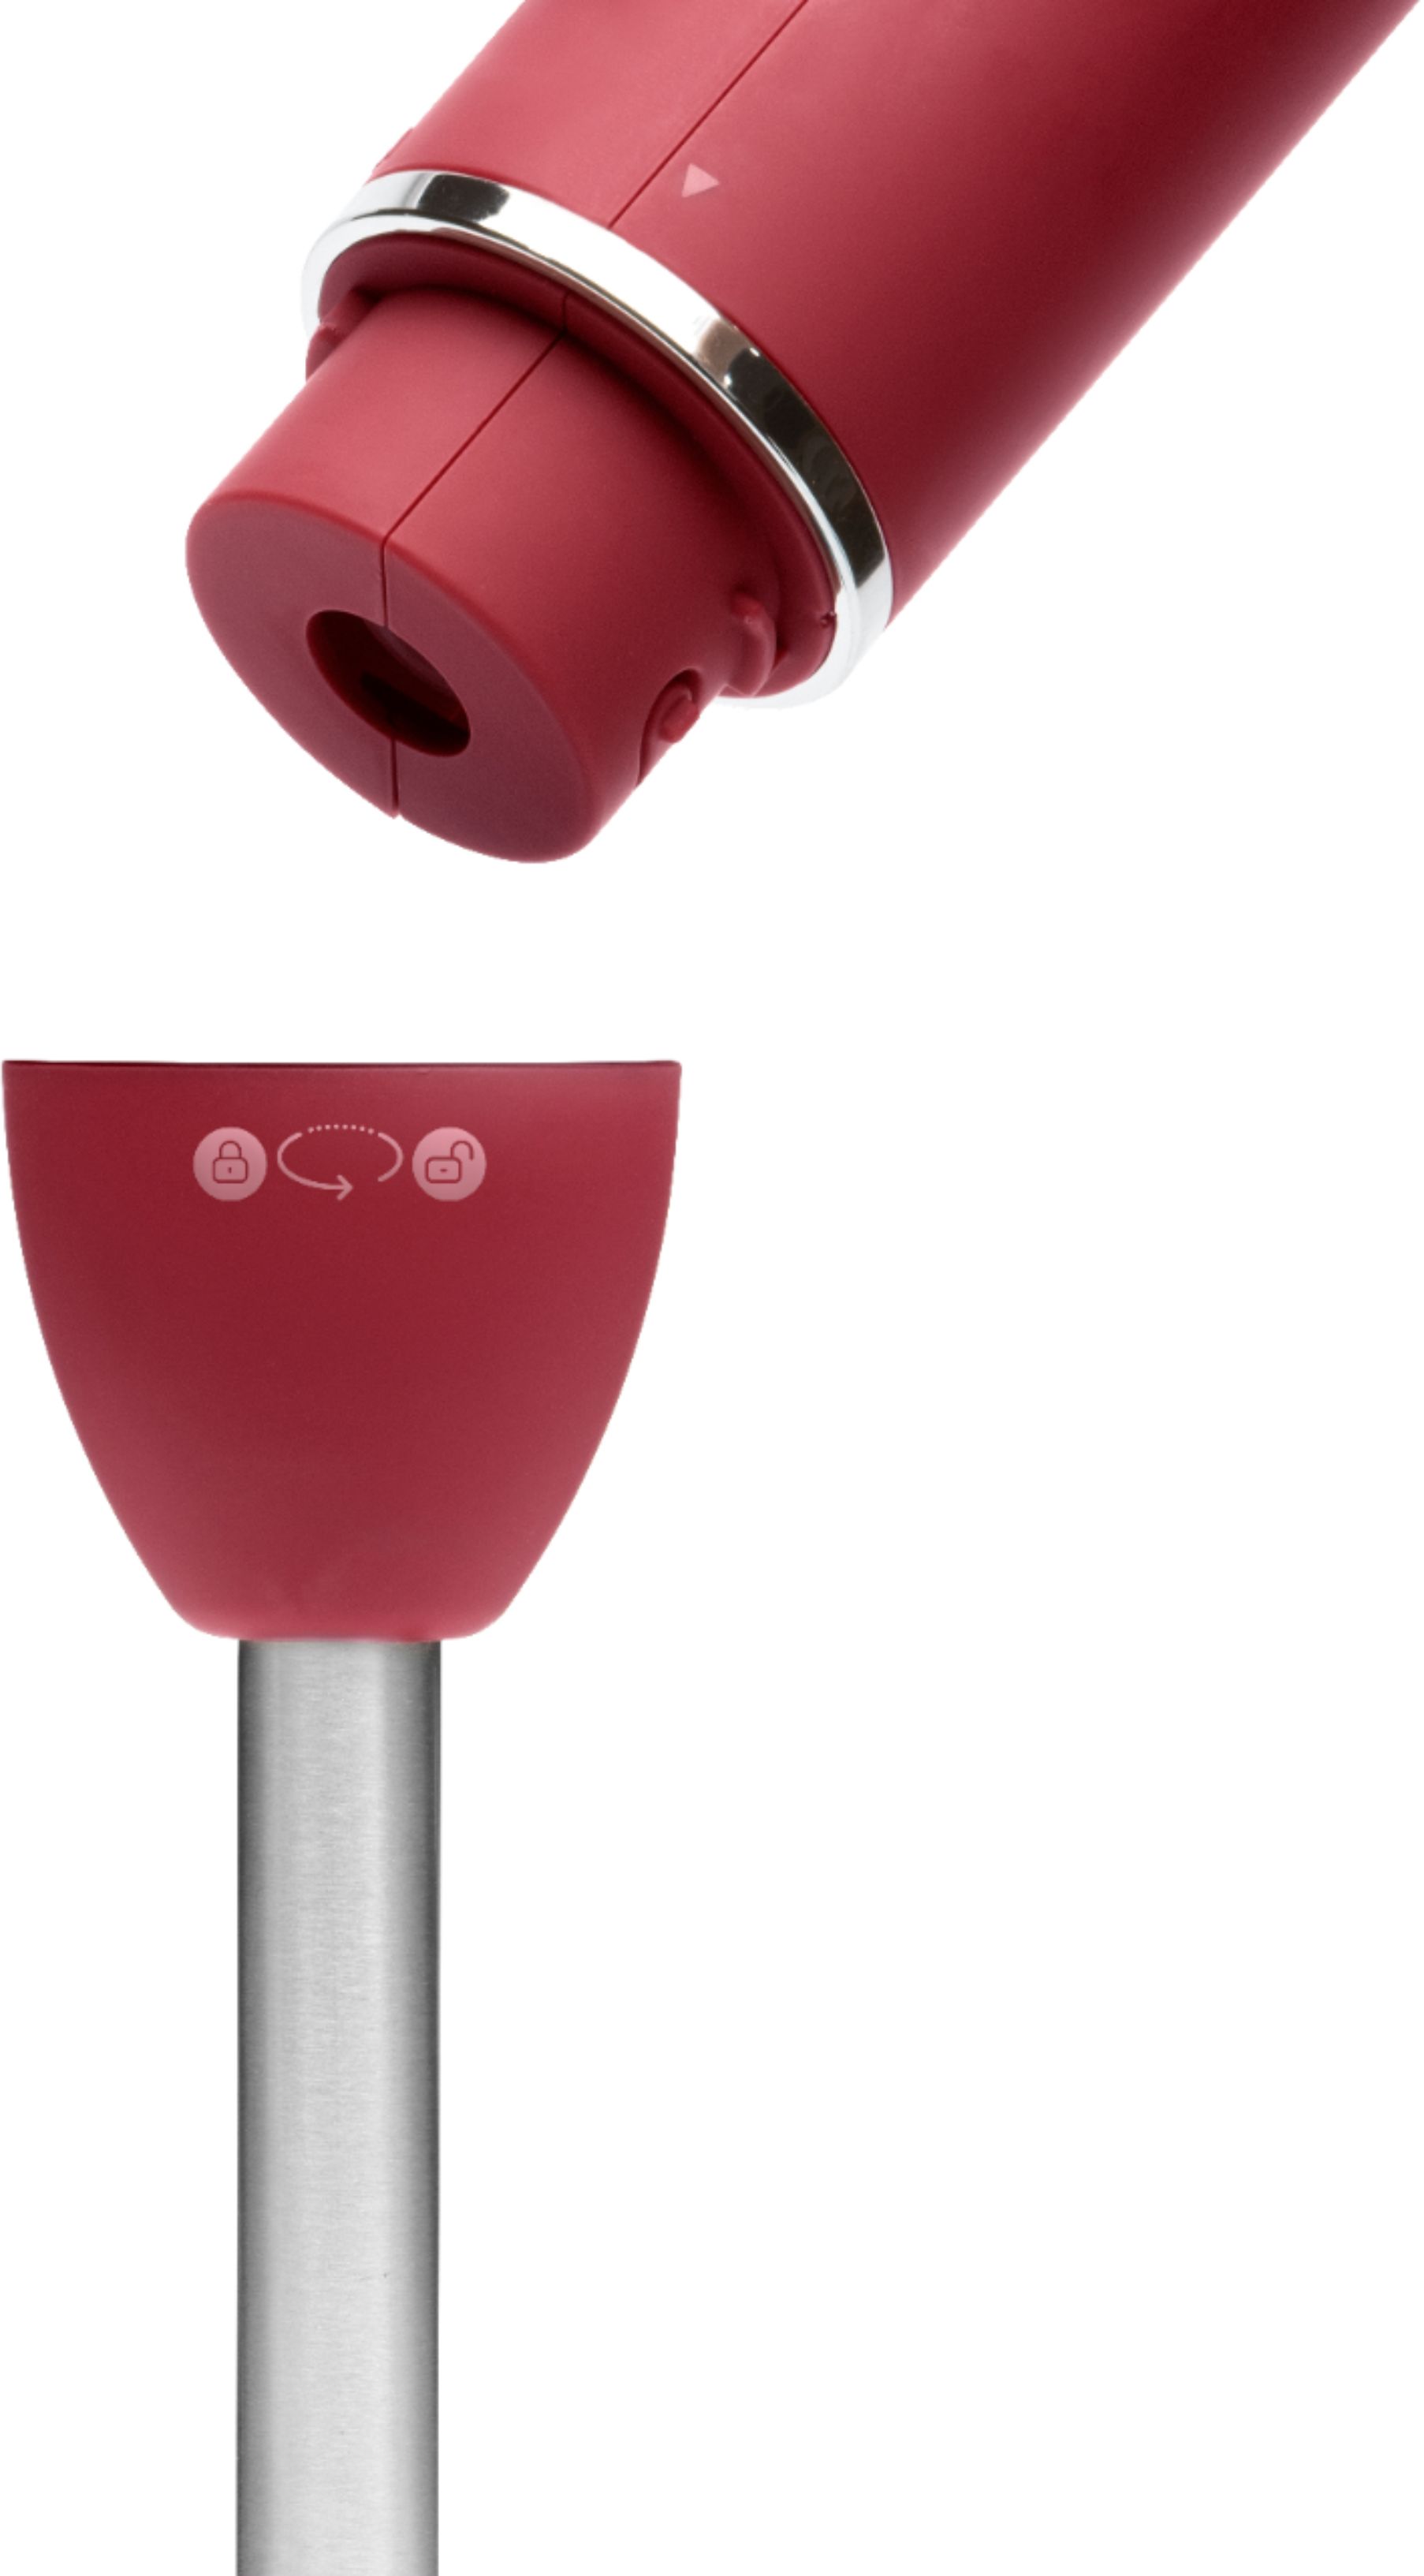 Chefman Immersion Stick 300 Watt Hand Blender - Red, 1 ct - QFC